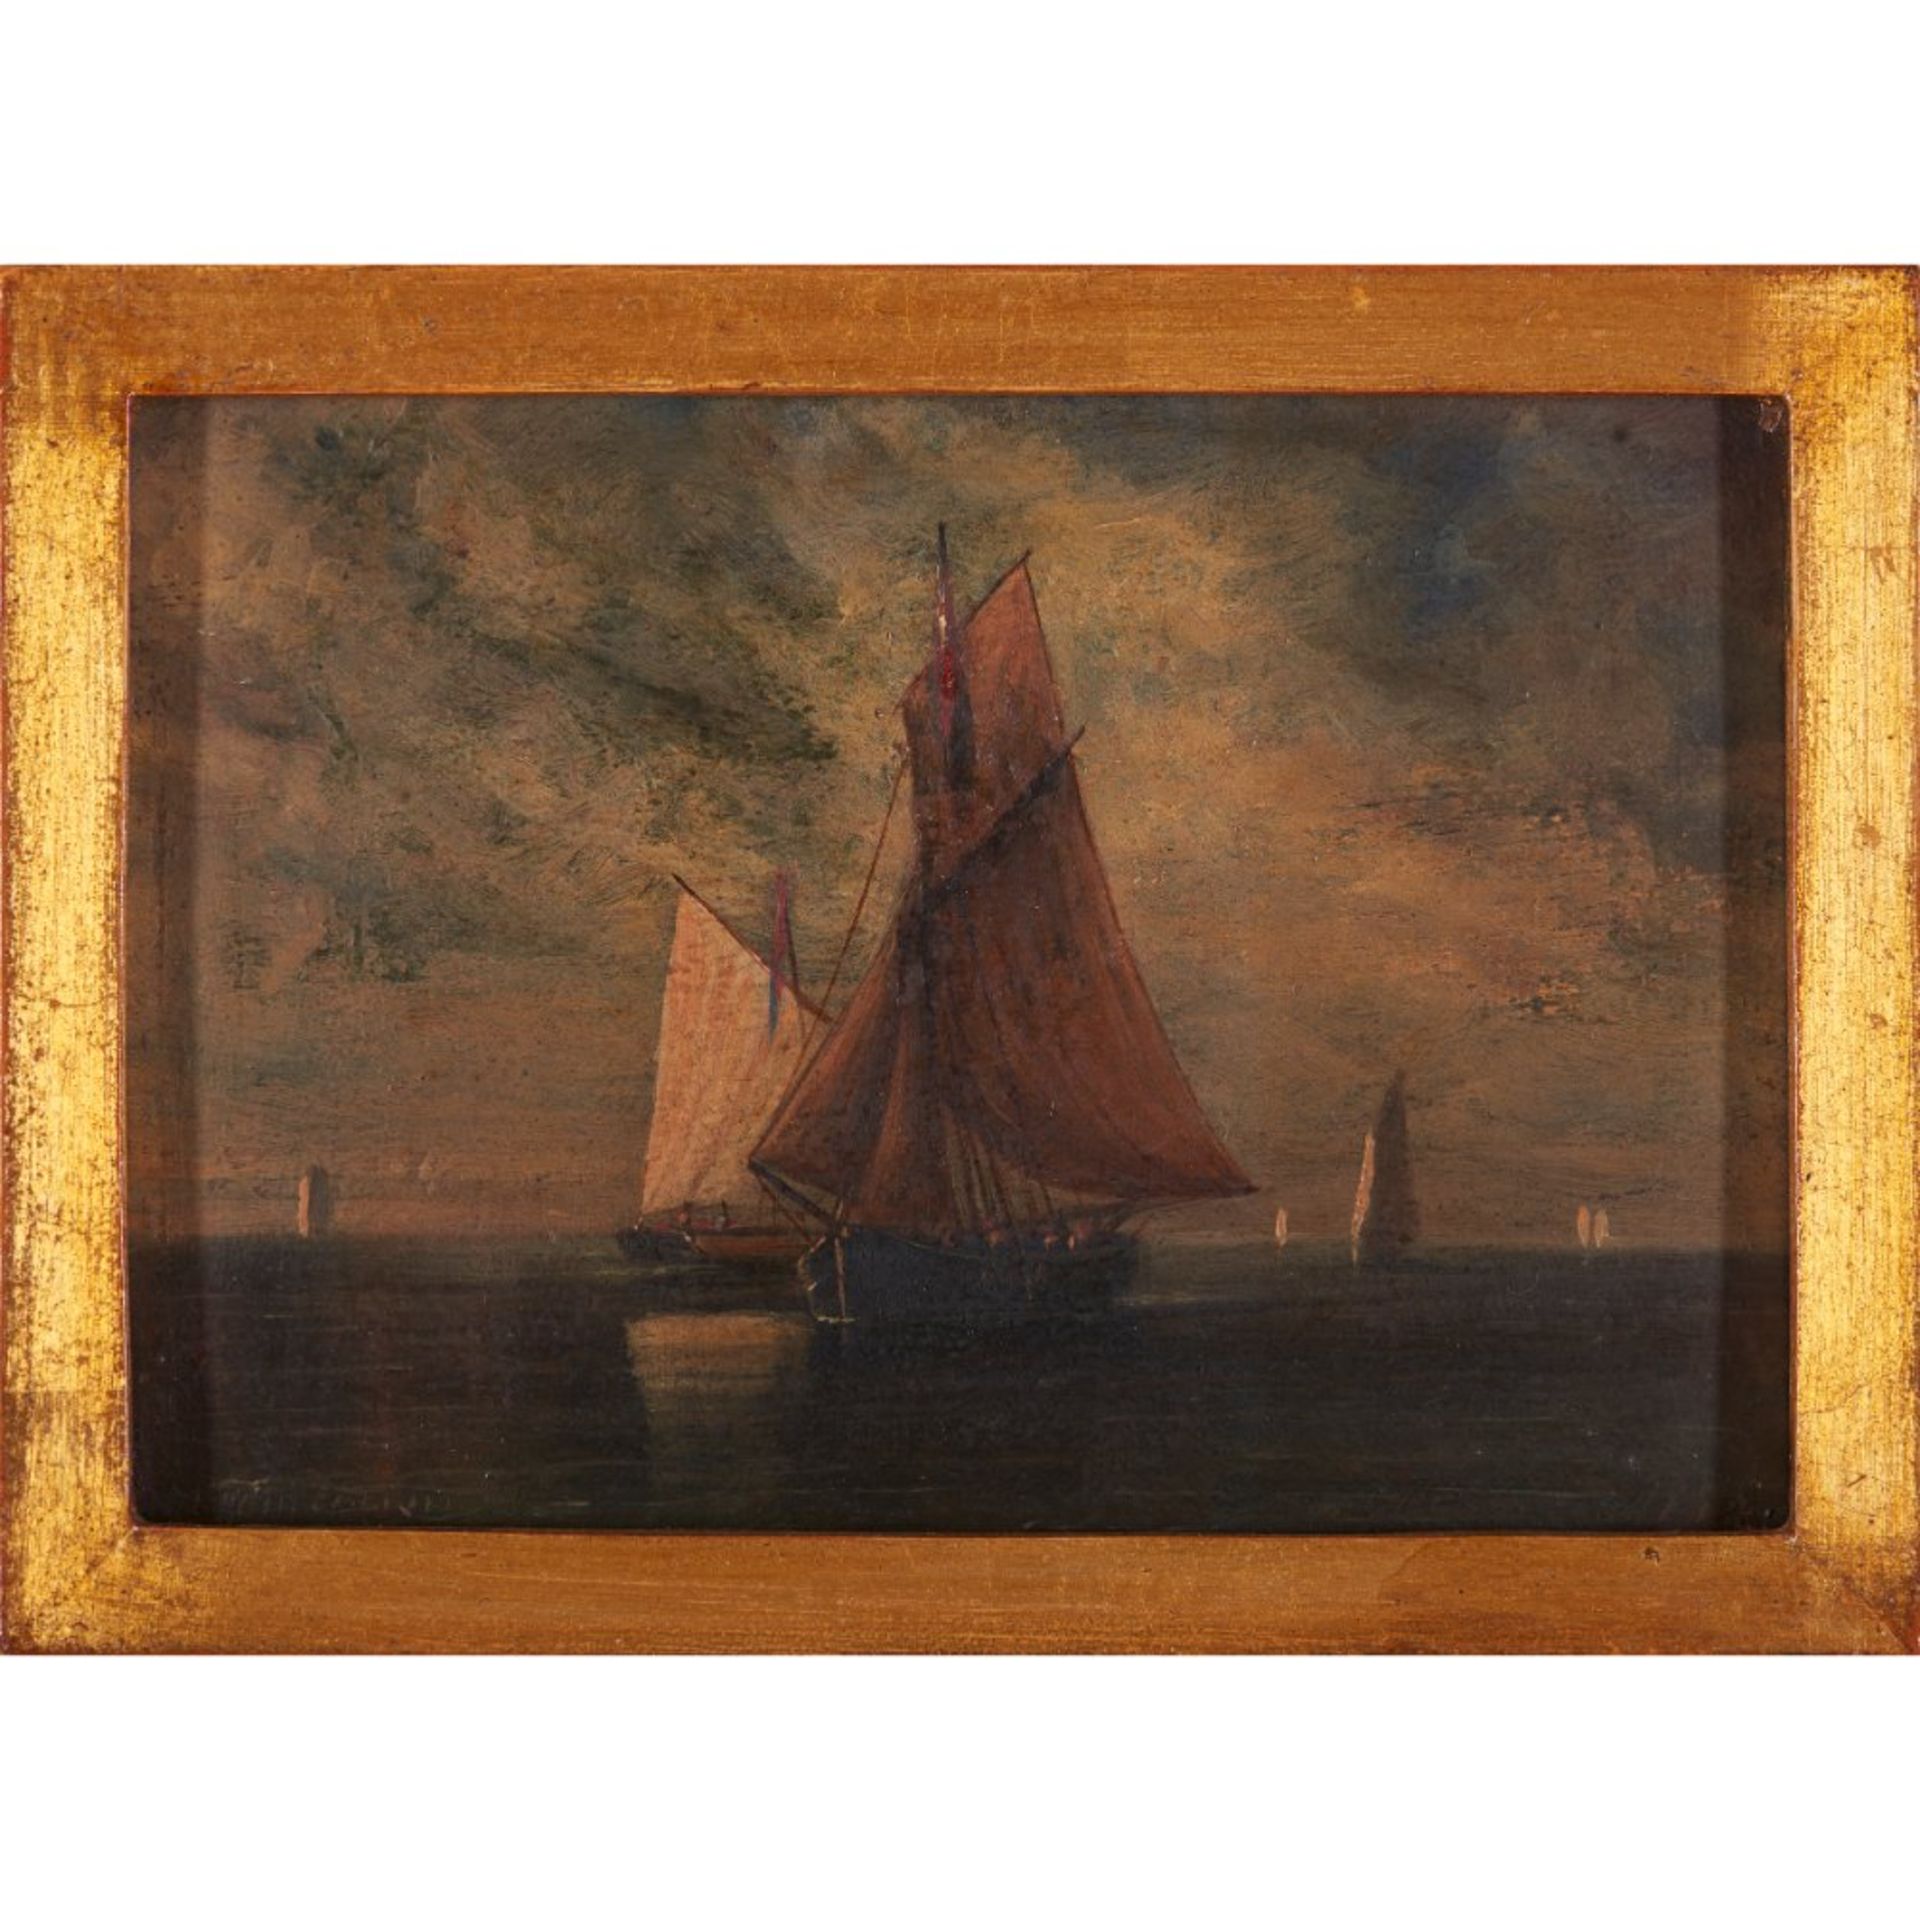 Luis A. Tomazini (1823-1902)Sailboats